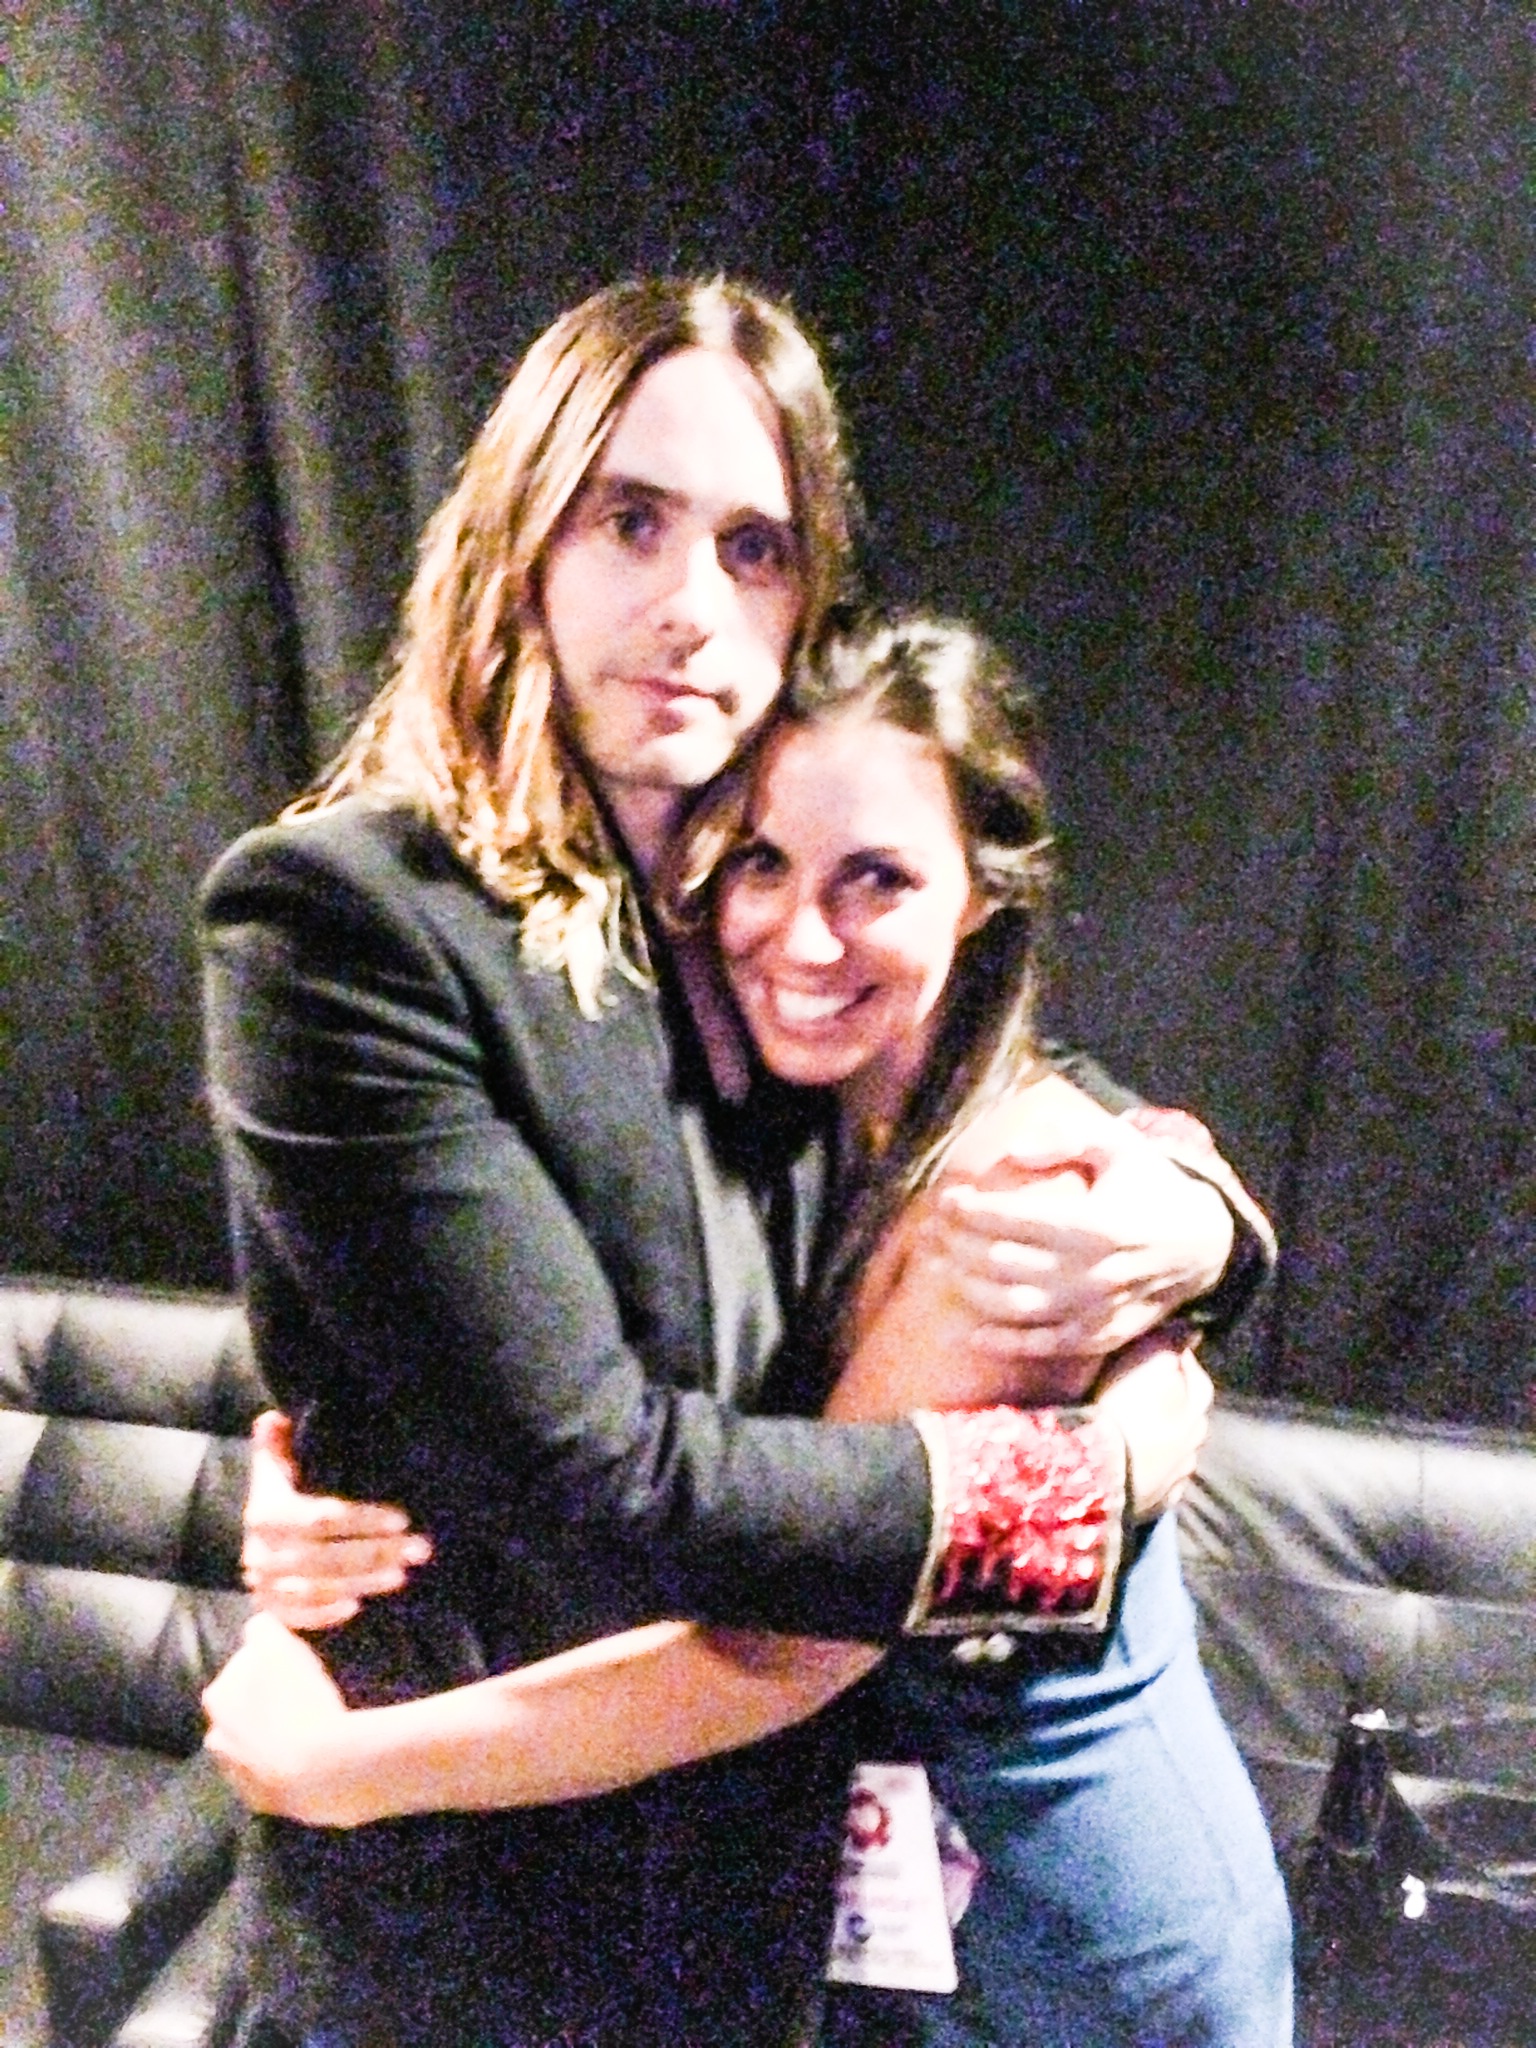 Hanging & hugging with Jared Leto in Las Vegas